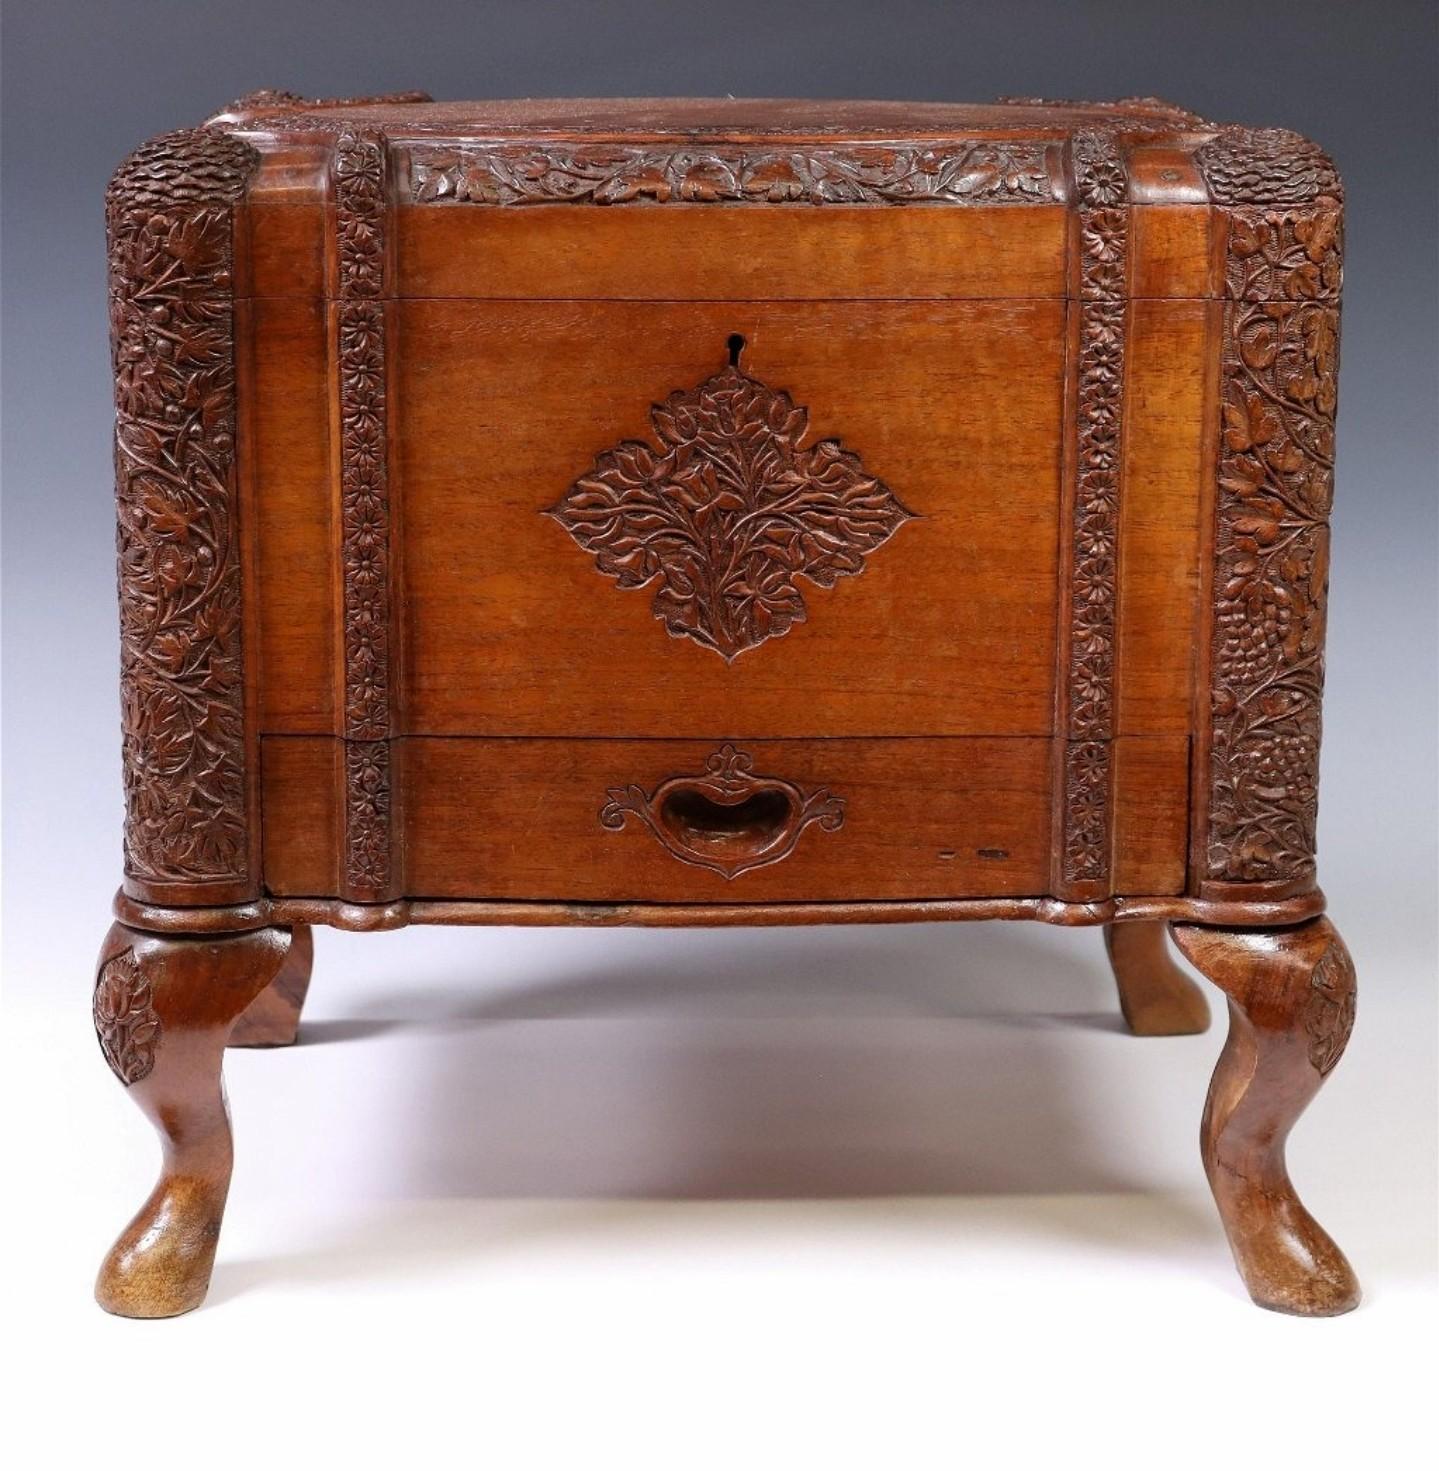 Eine seltene antike CIRCA 1900 südasiatischen Hand geschnitzt hölzernen dekorativen Tisch Box / Juwel Schatulle.

Handgefertigt im frühen 20. Jahrhundert, wahrscheinlich British Ceylon (heute Sri Lanka) / Anglo-Indian (Kolonialherrschaft in Indien),